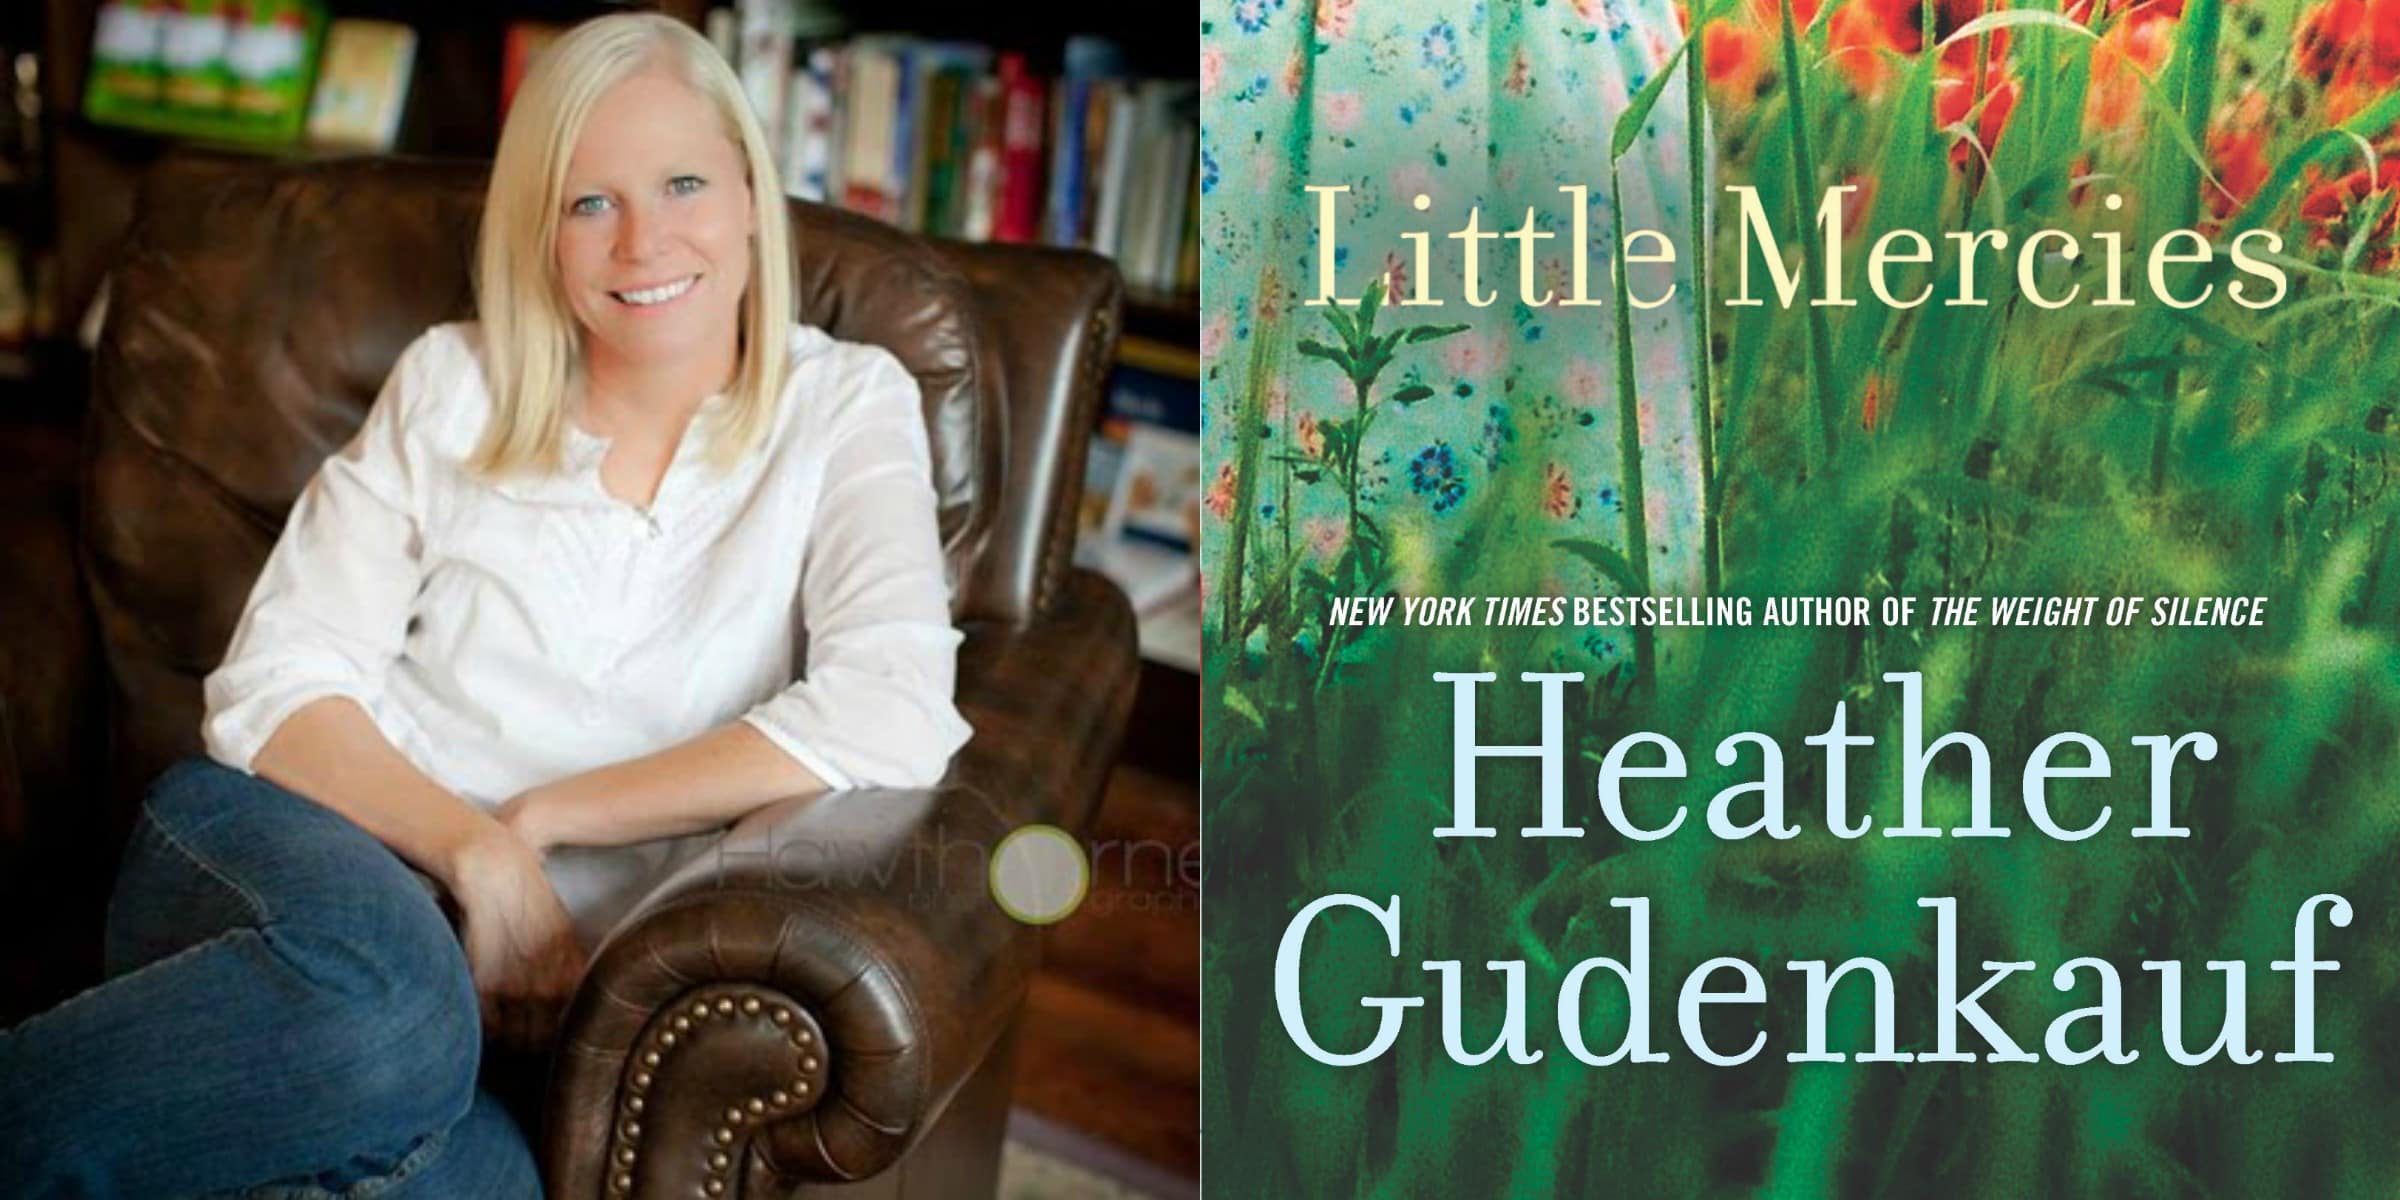 Sundays With Writers: Little Mercies by Heather Gudenkauf